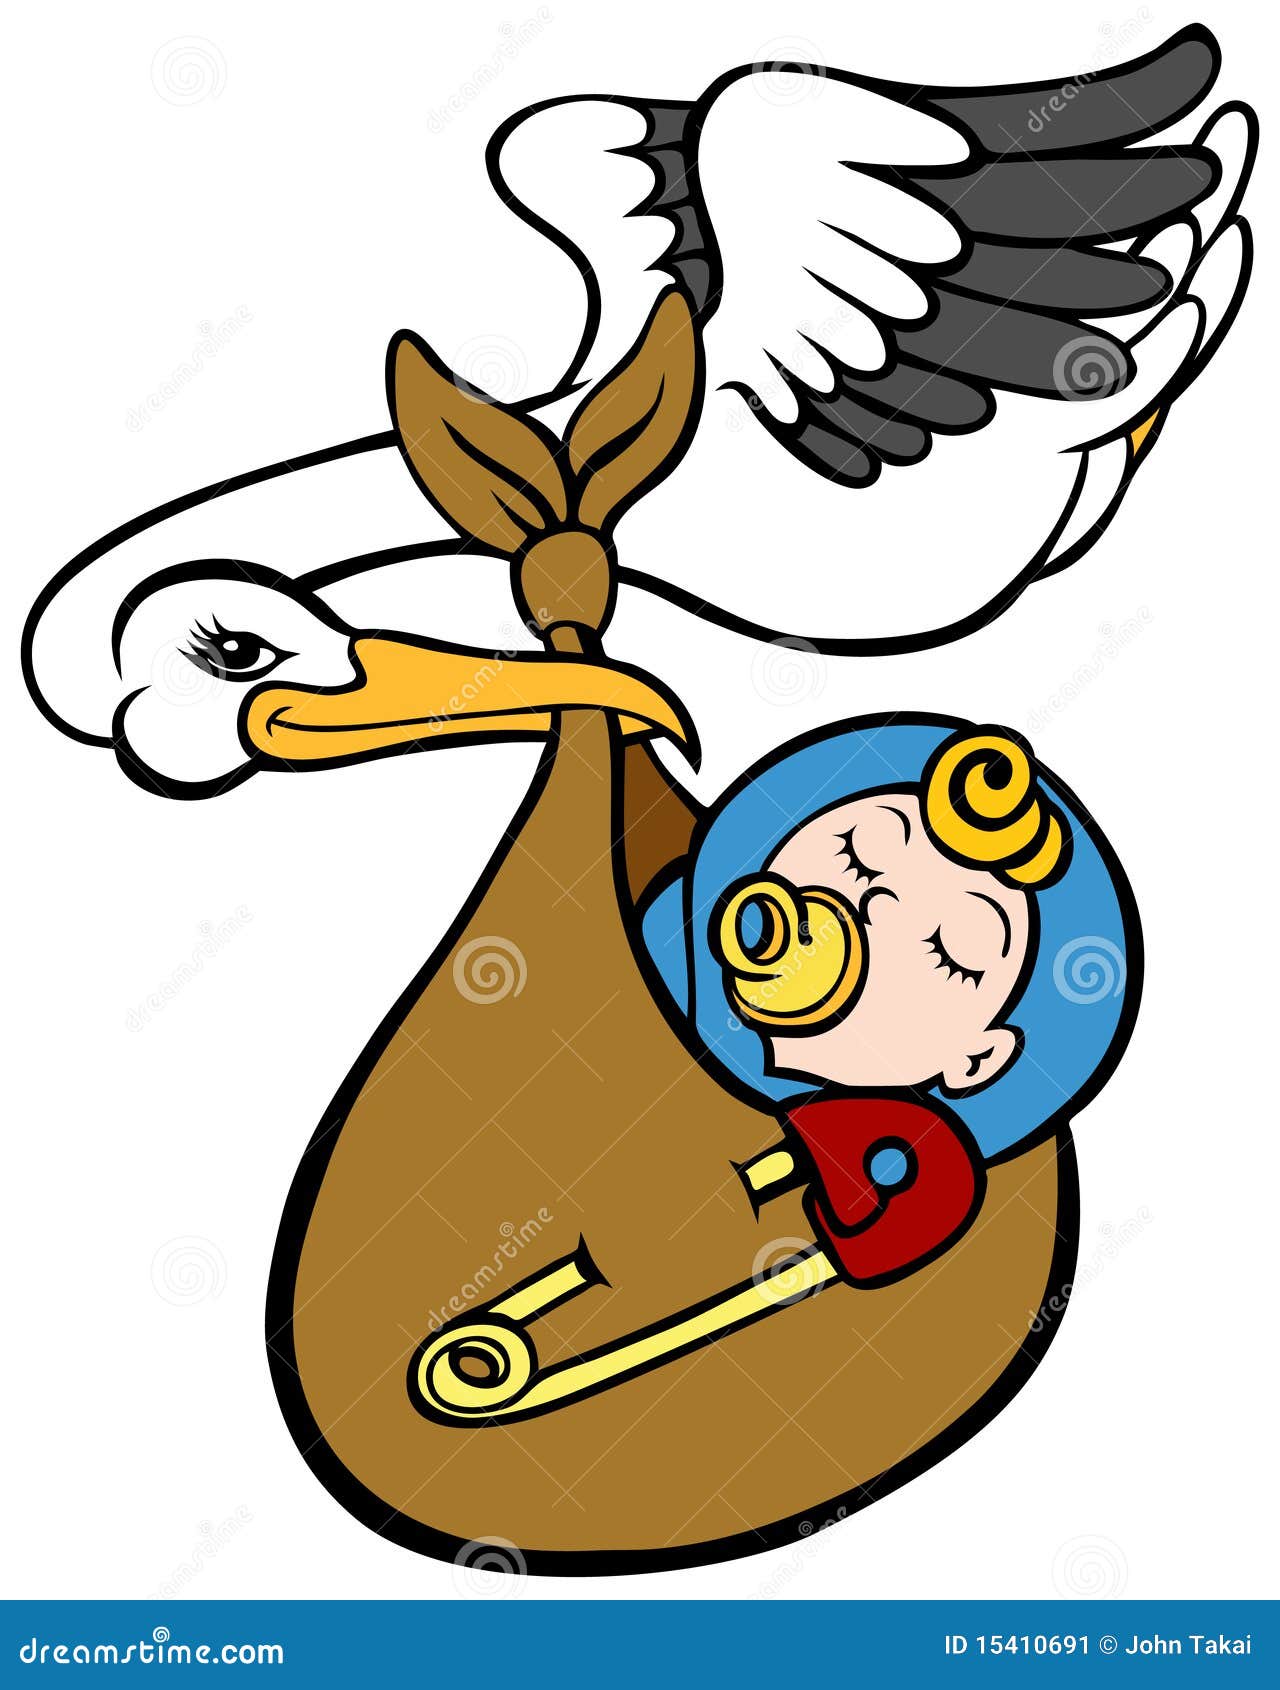 stork delivering baby